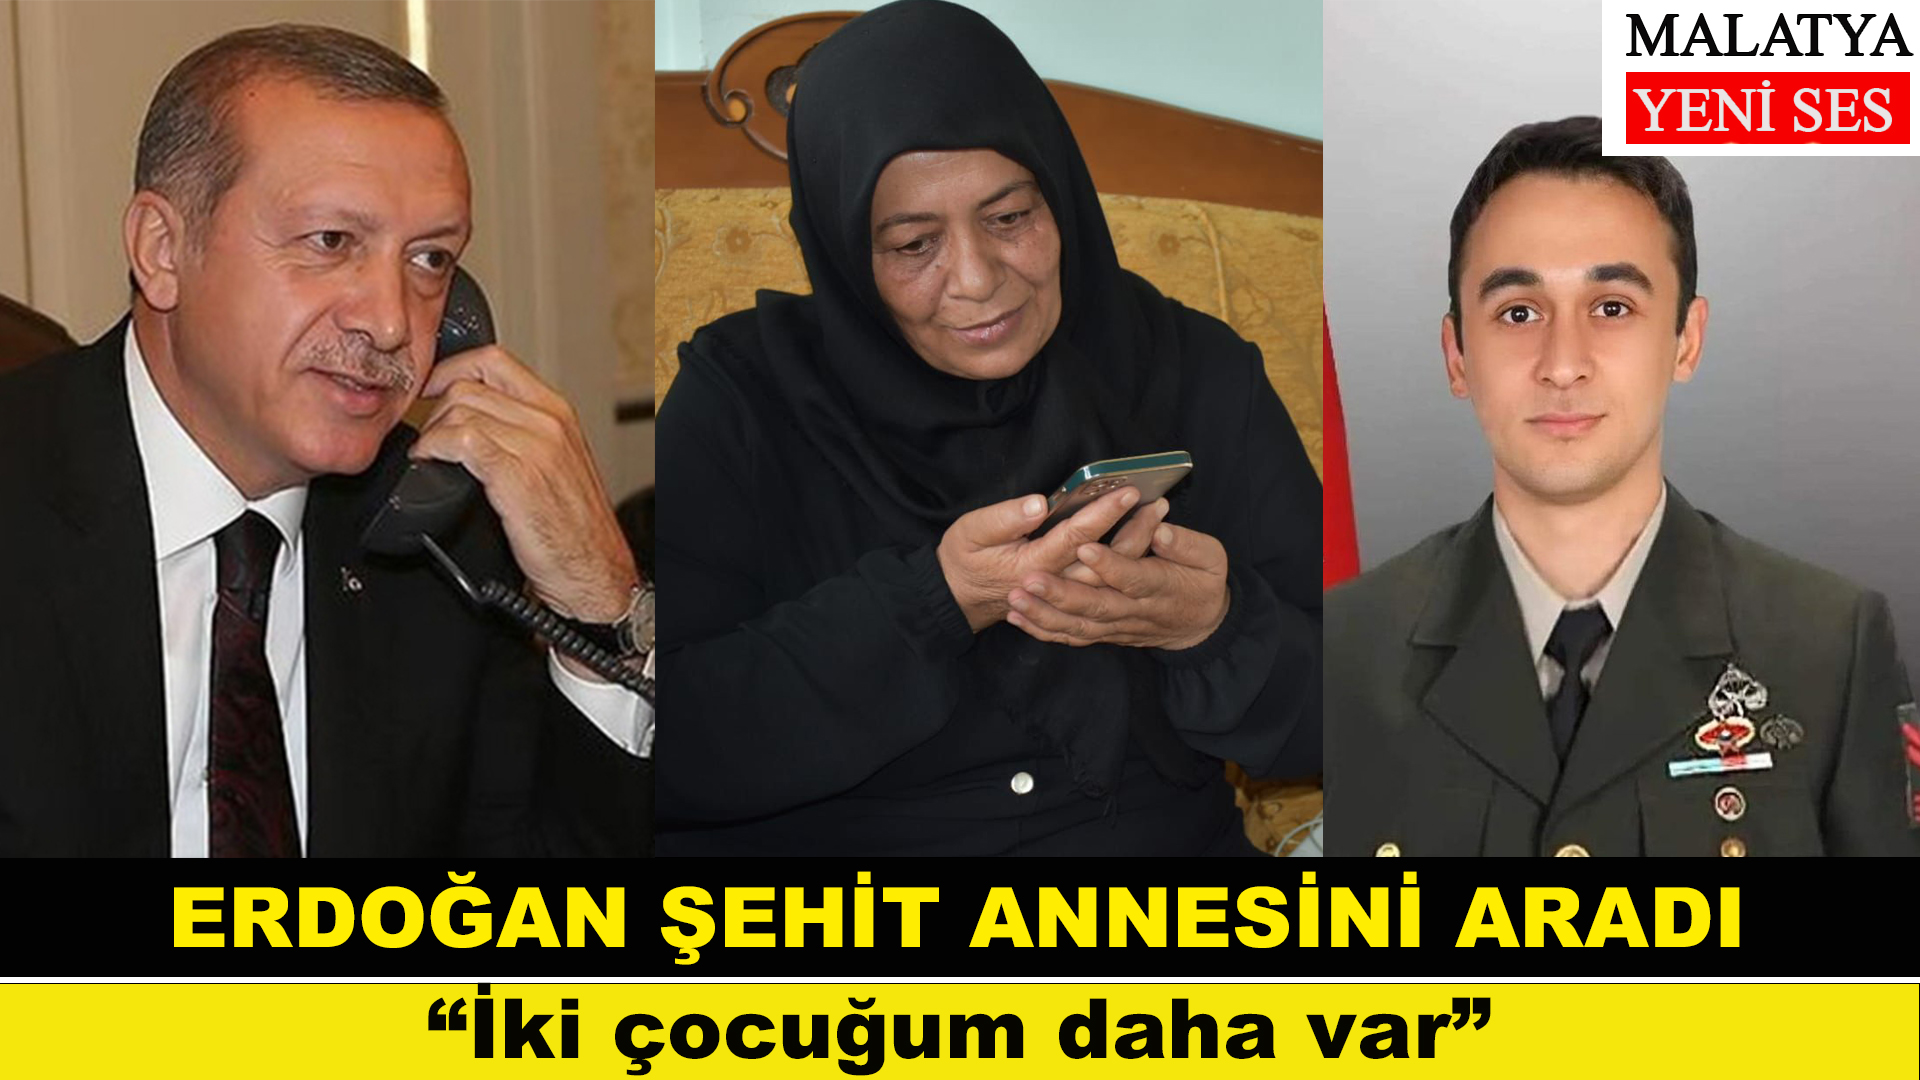 Cumhurbaşkanı Recep Tayyip Erdoğan, Pençe-Kilit Operasyonu'nda EYP'nin patlaması sonucu şehit olan Malatyalı Piyade Uzman Çavuş Halil Koç’un annesiyle telefonda görüşerek taziyelerini iletti.